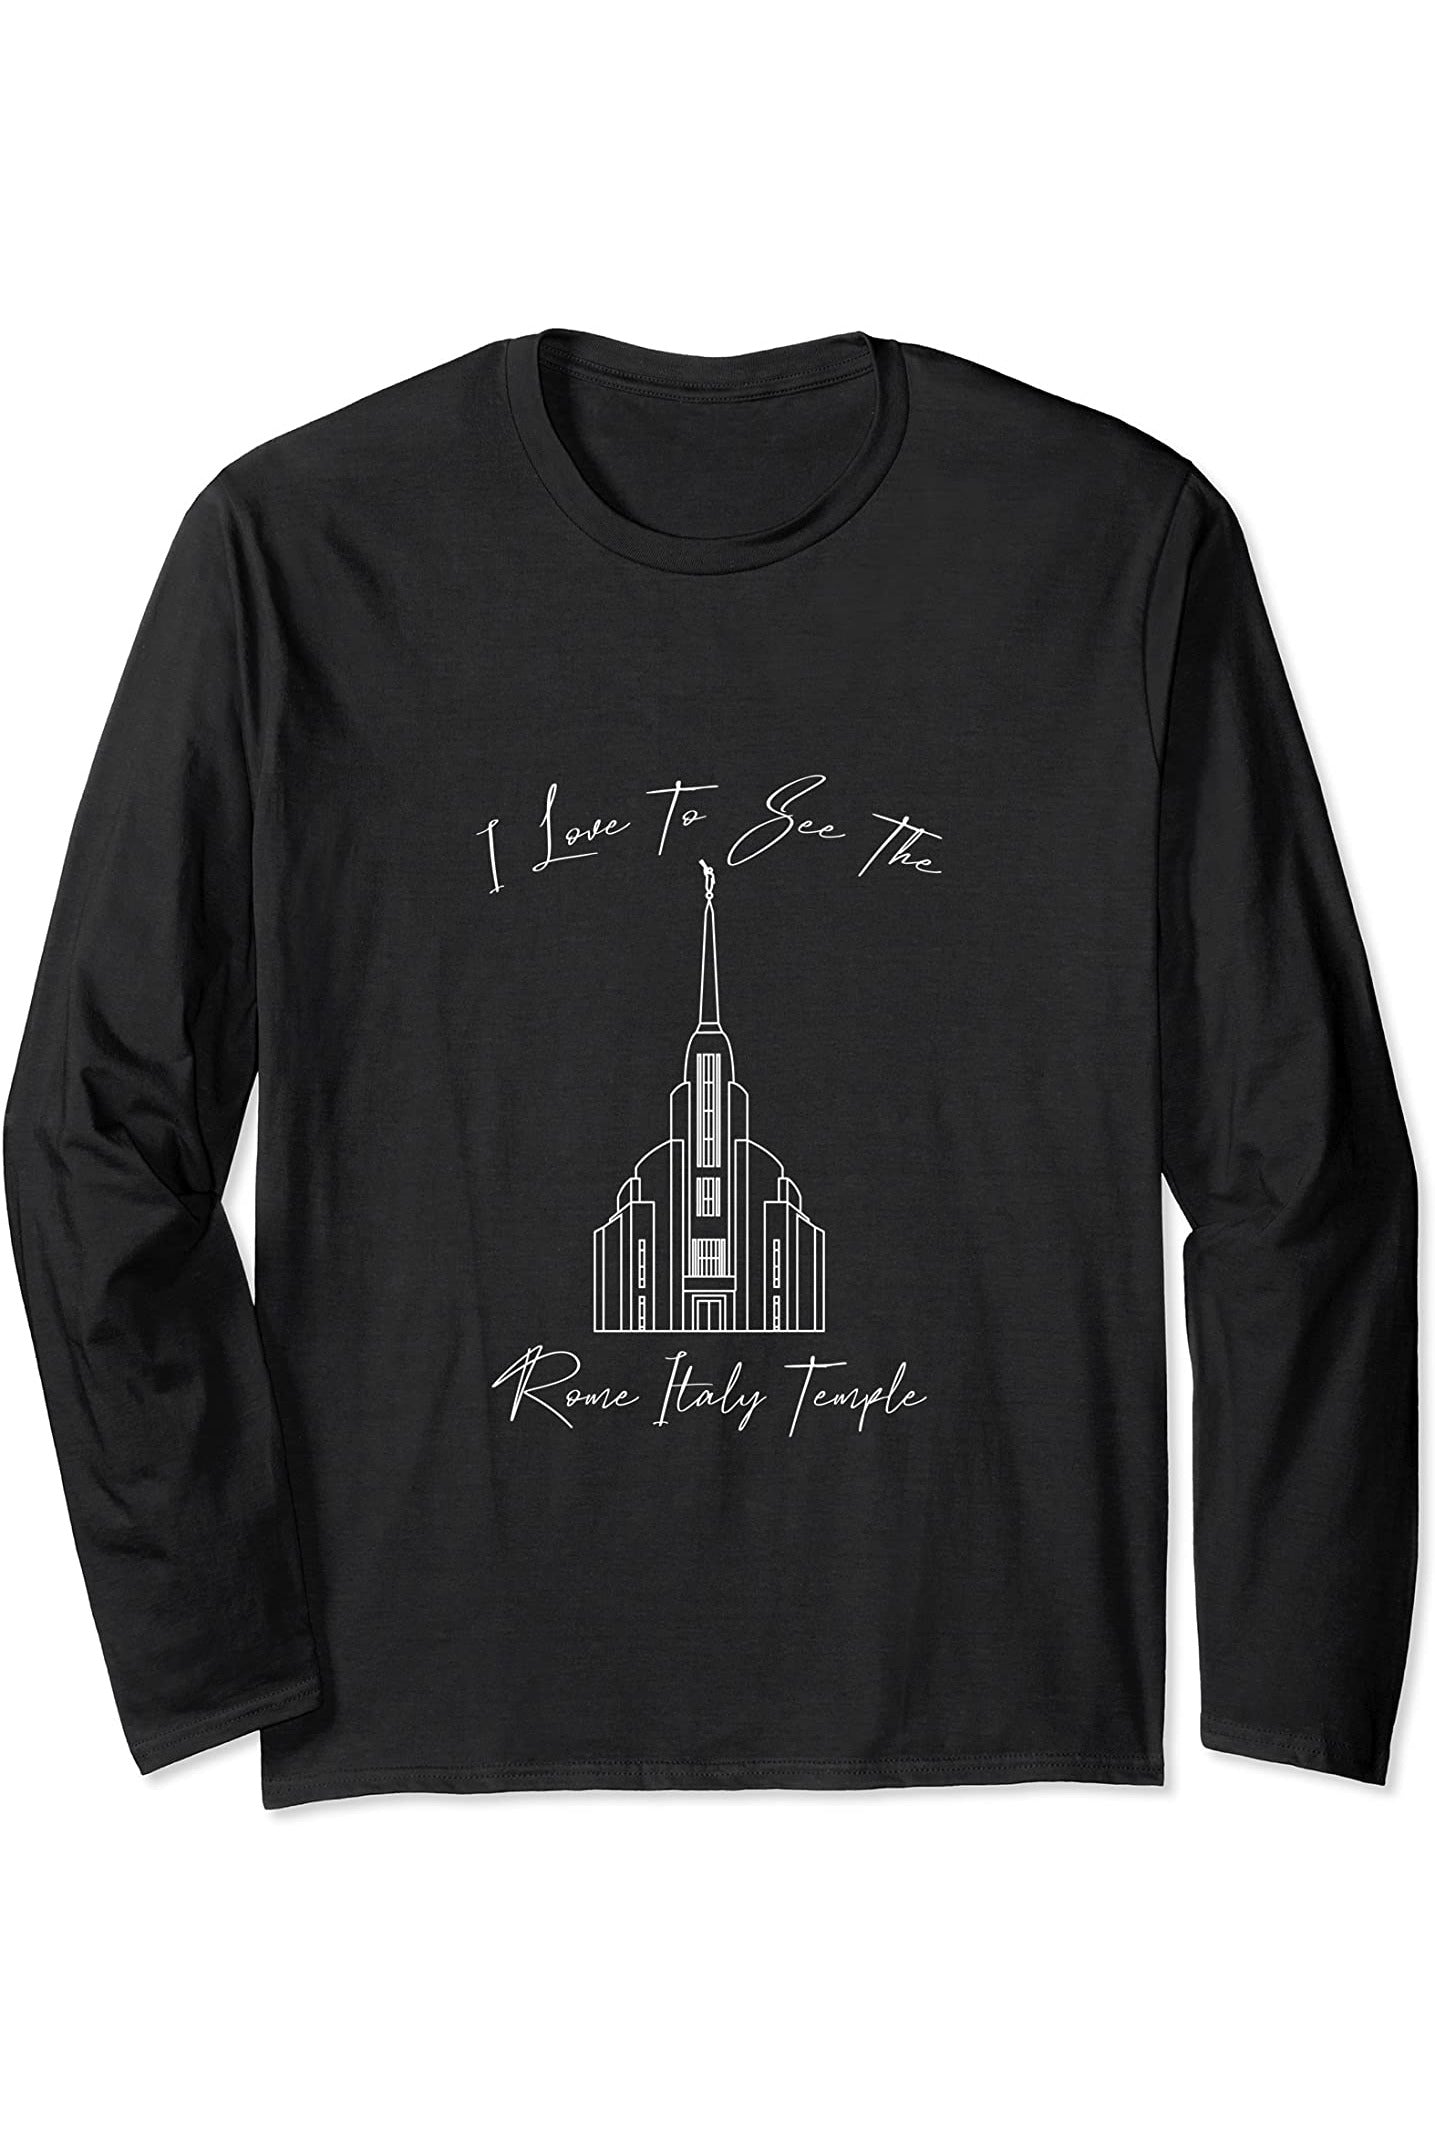 Roma Italia Tempio, amo vedere il mio tempio, calligrafia Long Sleeve T-Shirt